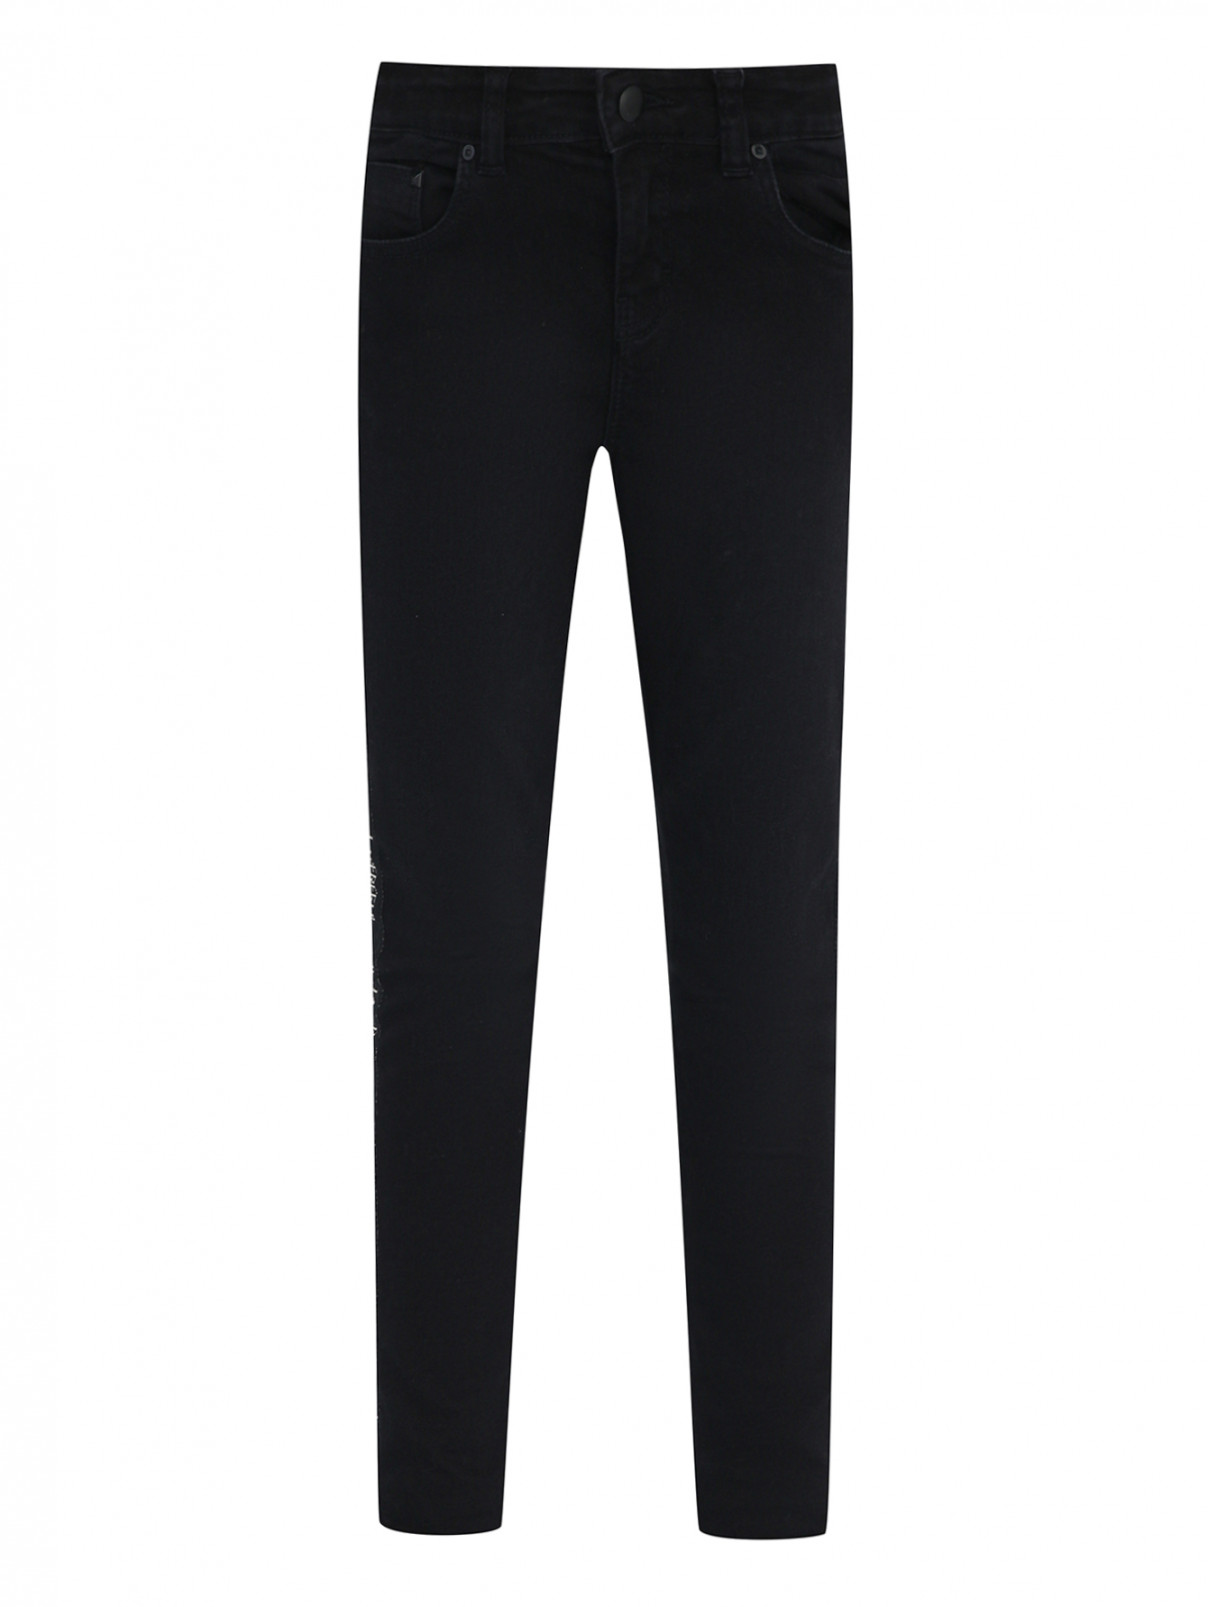 Прямые джинсы с лампасами Karl Lagerfeld  –  Общий вид  – Цвет:  Черный